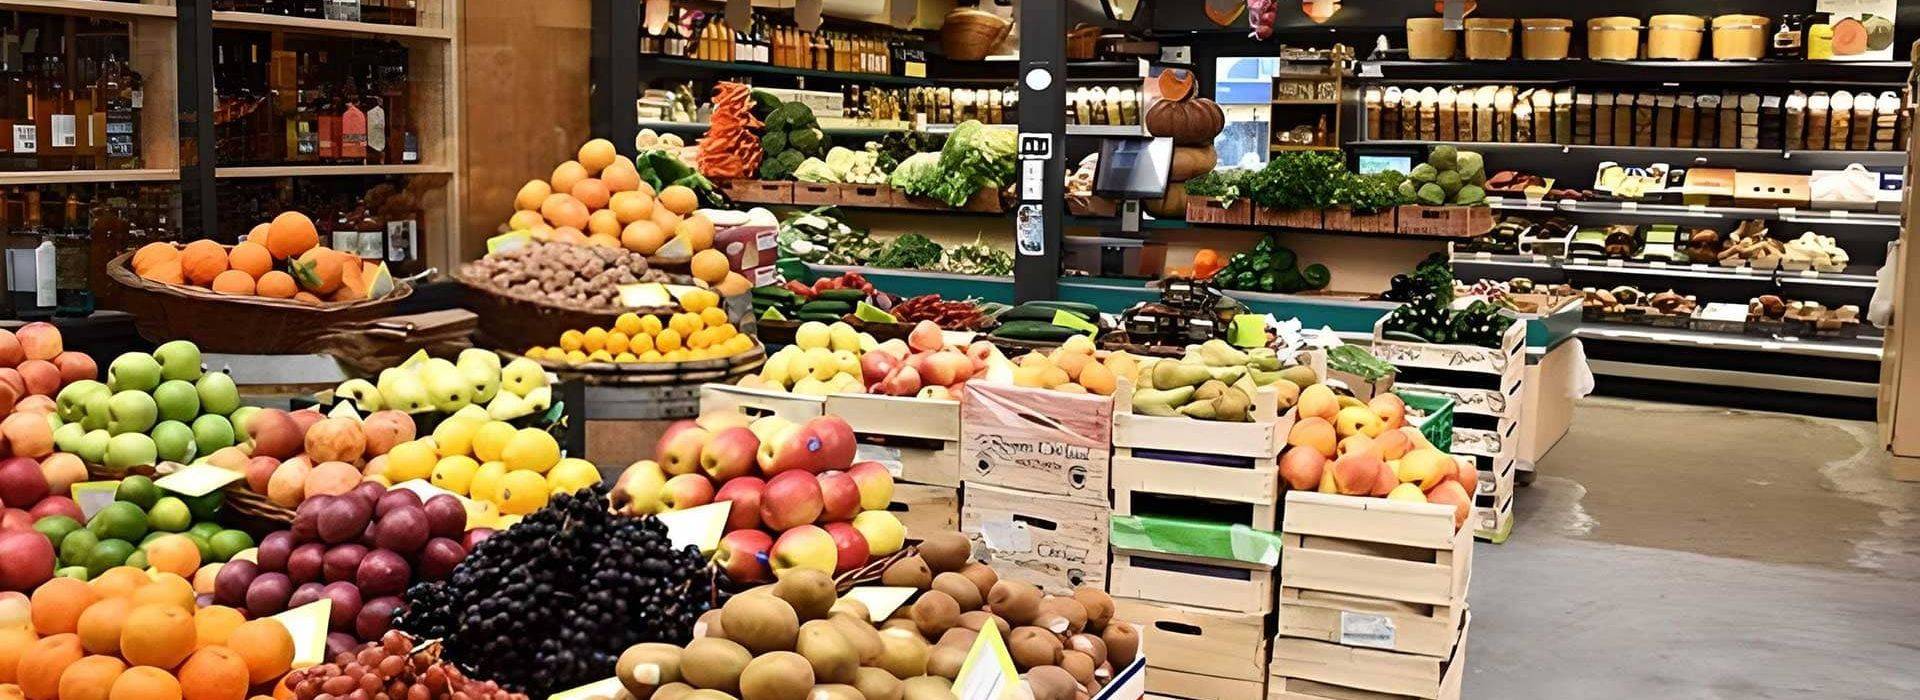 marché - fruits et légumes